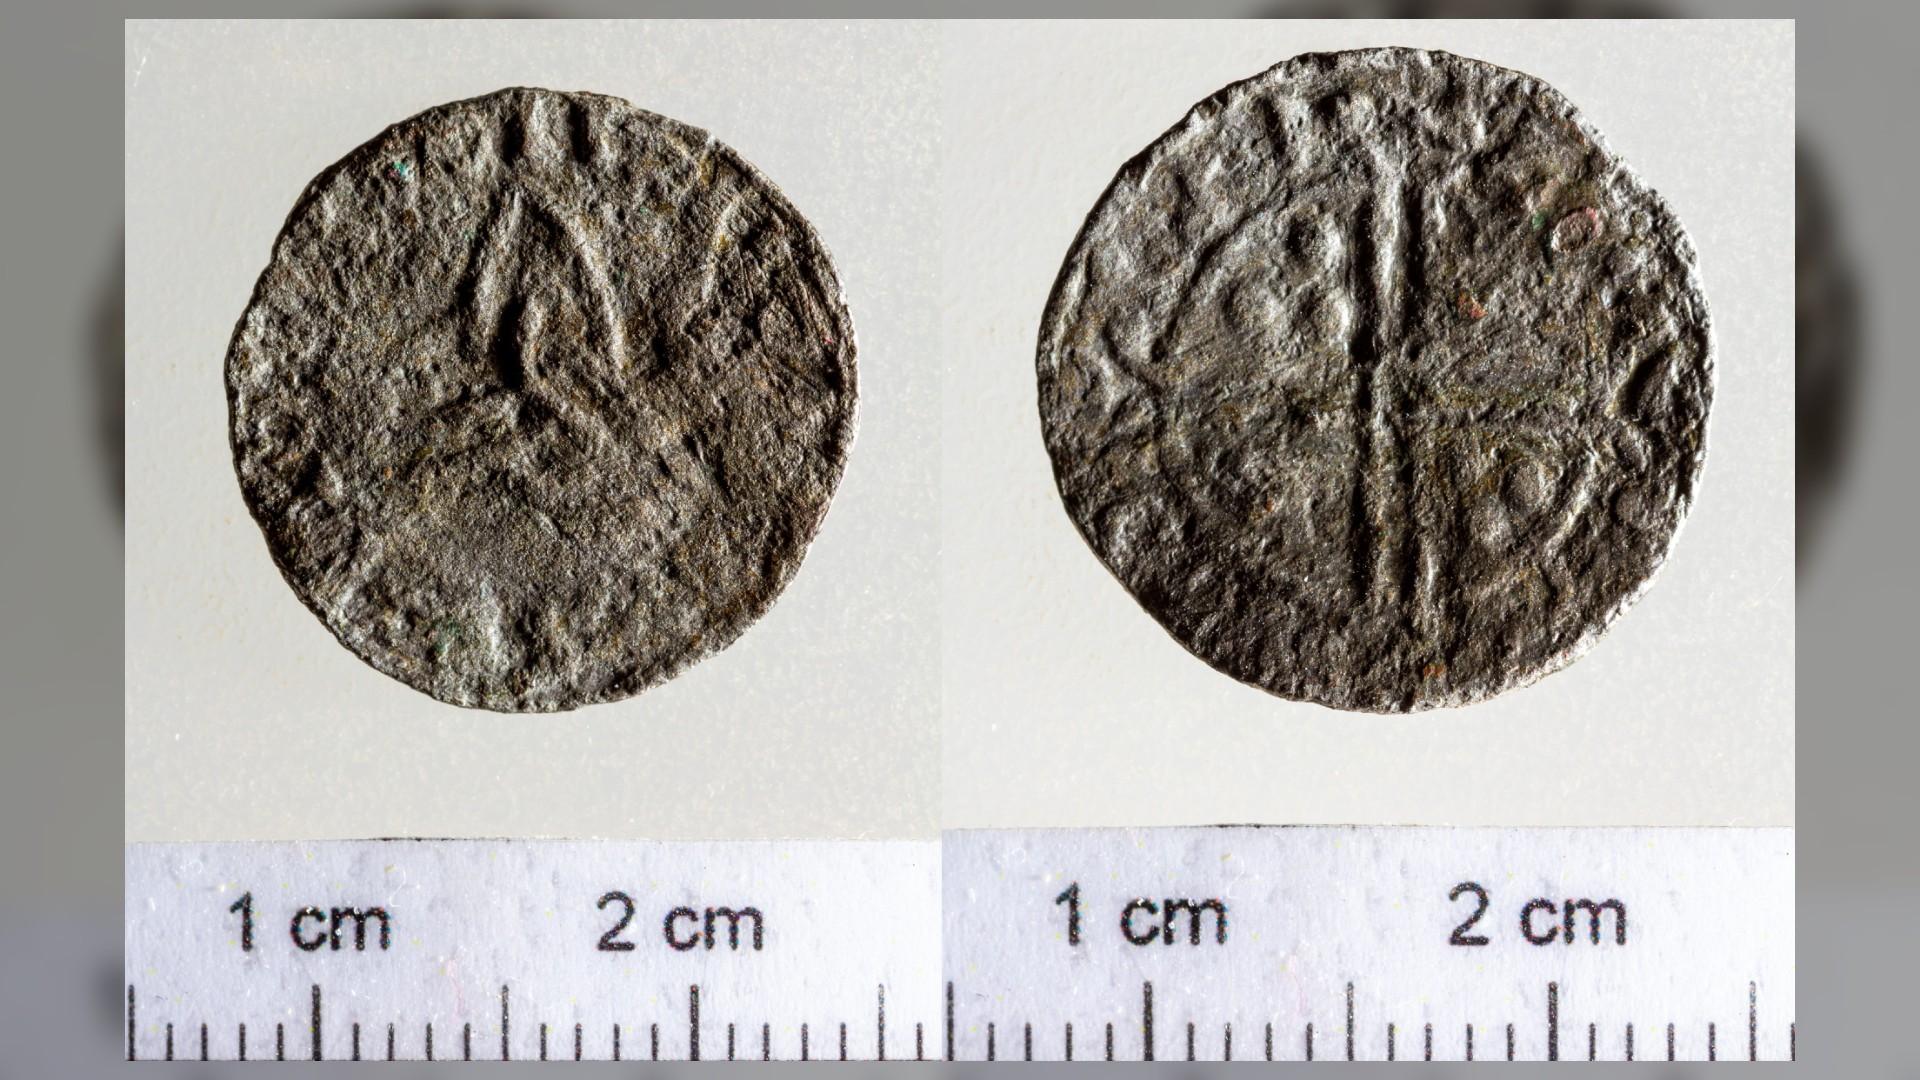 Hongrie - Pièce de monnaie datant du règne d'Harald Hardrada découverte sur le site archéologique de Kesztölc - Photo: Tamás Retkes